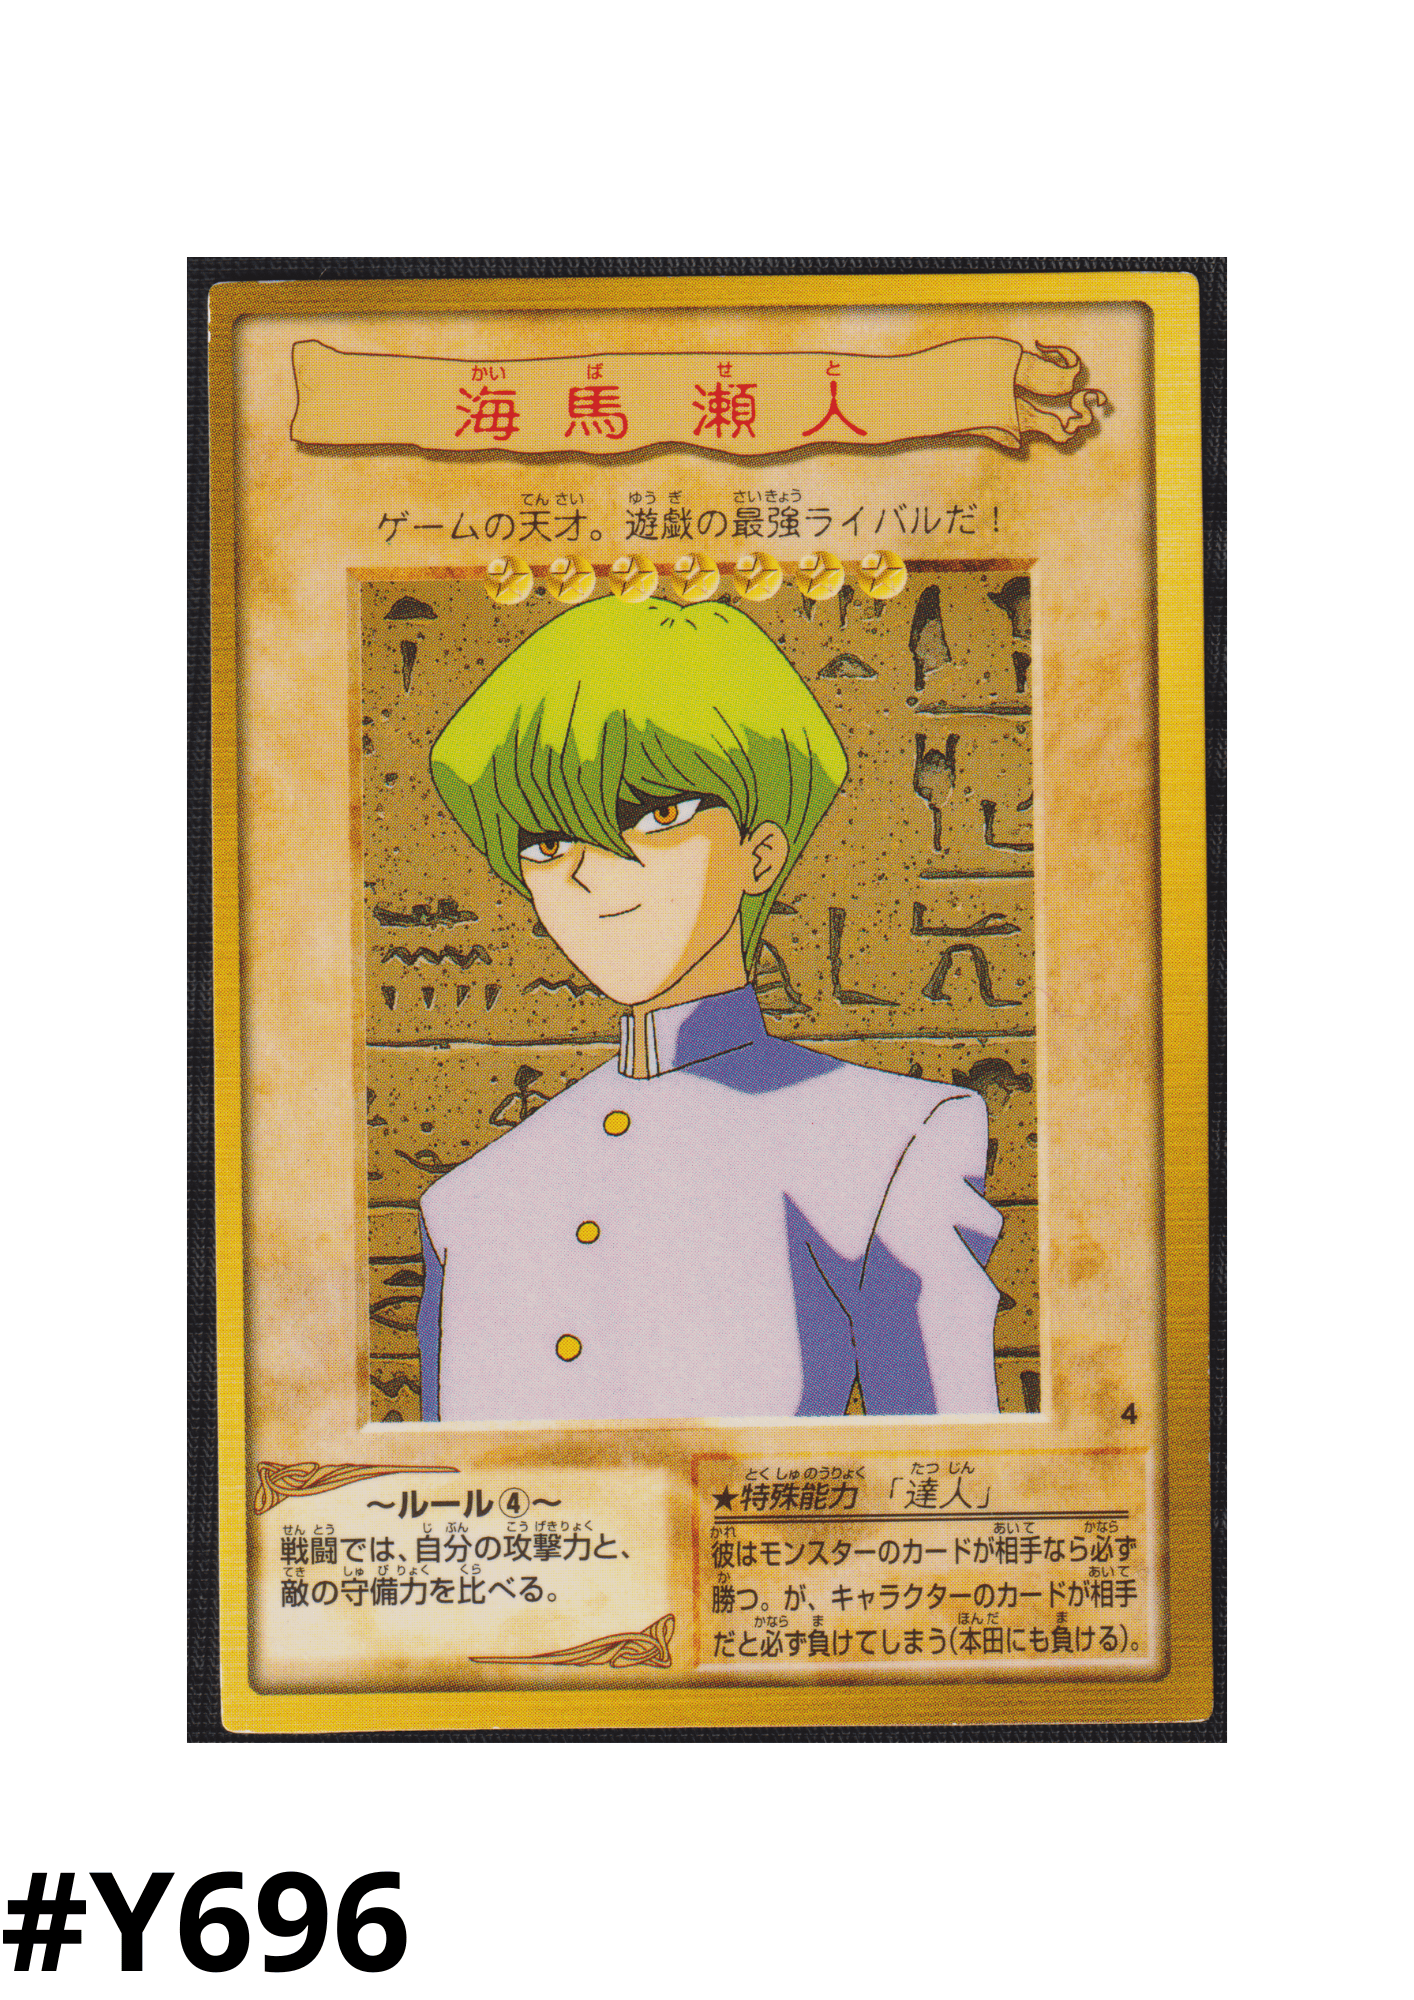 Yu-Gi-Oh! | Bandai Card No.4 | Seto Kaiba ChitoroShop